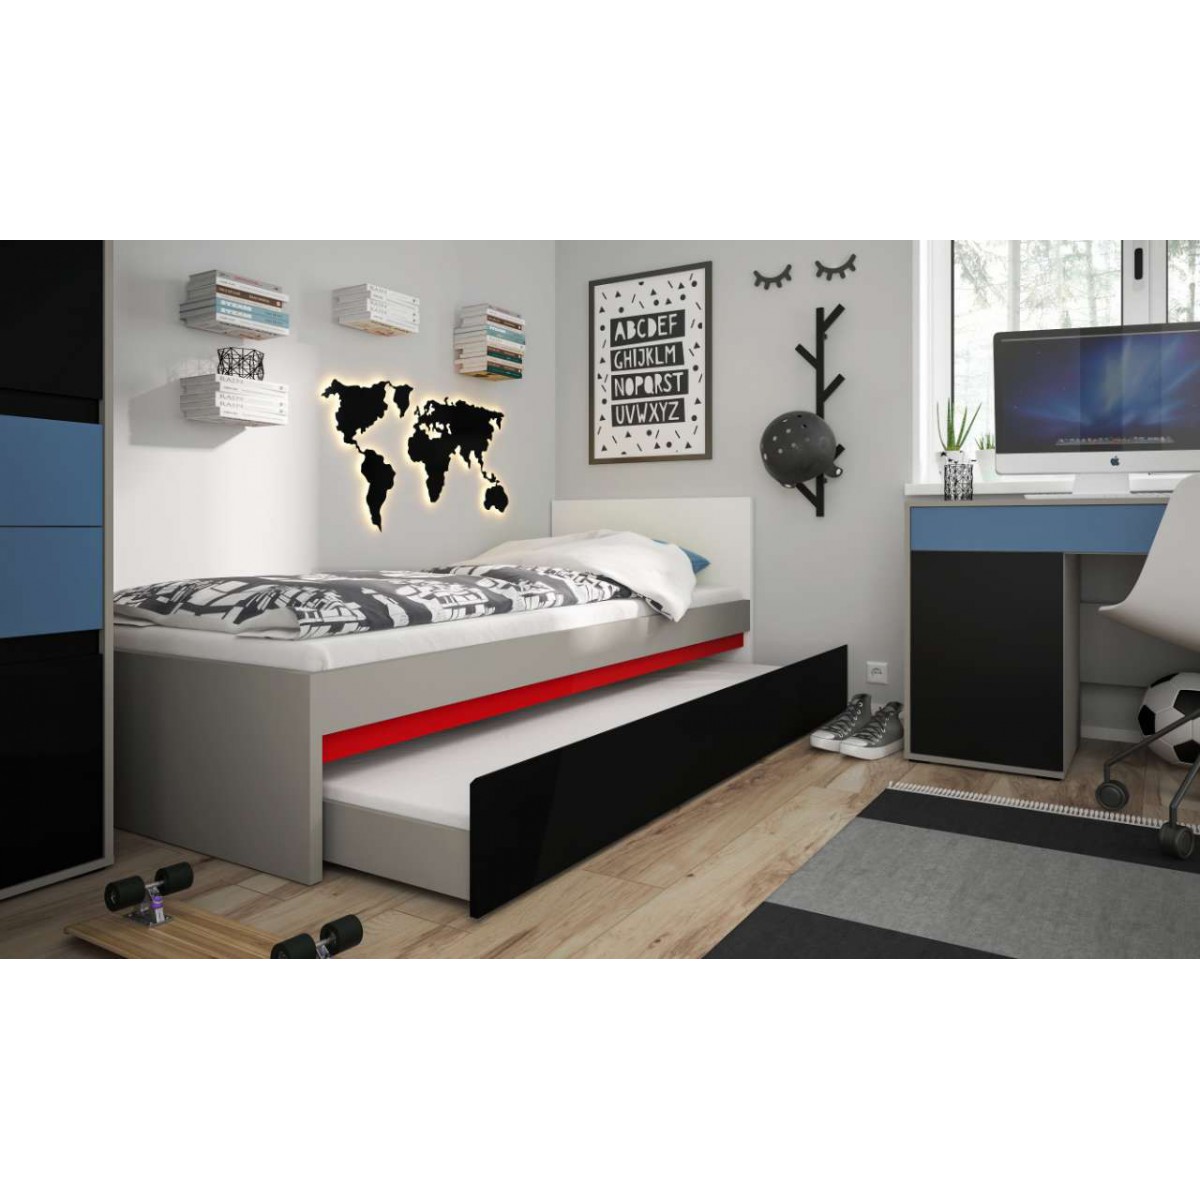 Łóżko do pokoju młodzieżowego szary platynowy, czarna perła / biała alpejska Laser 90cm LASZ01C